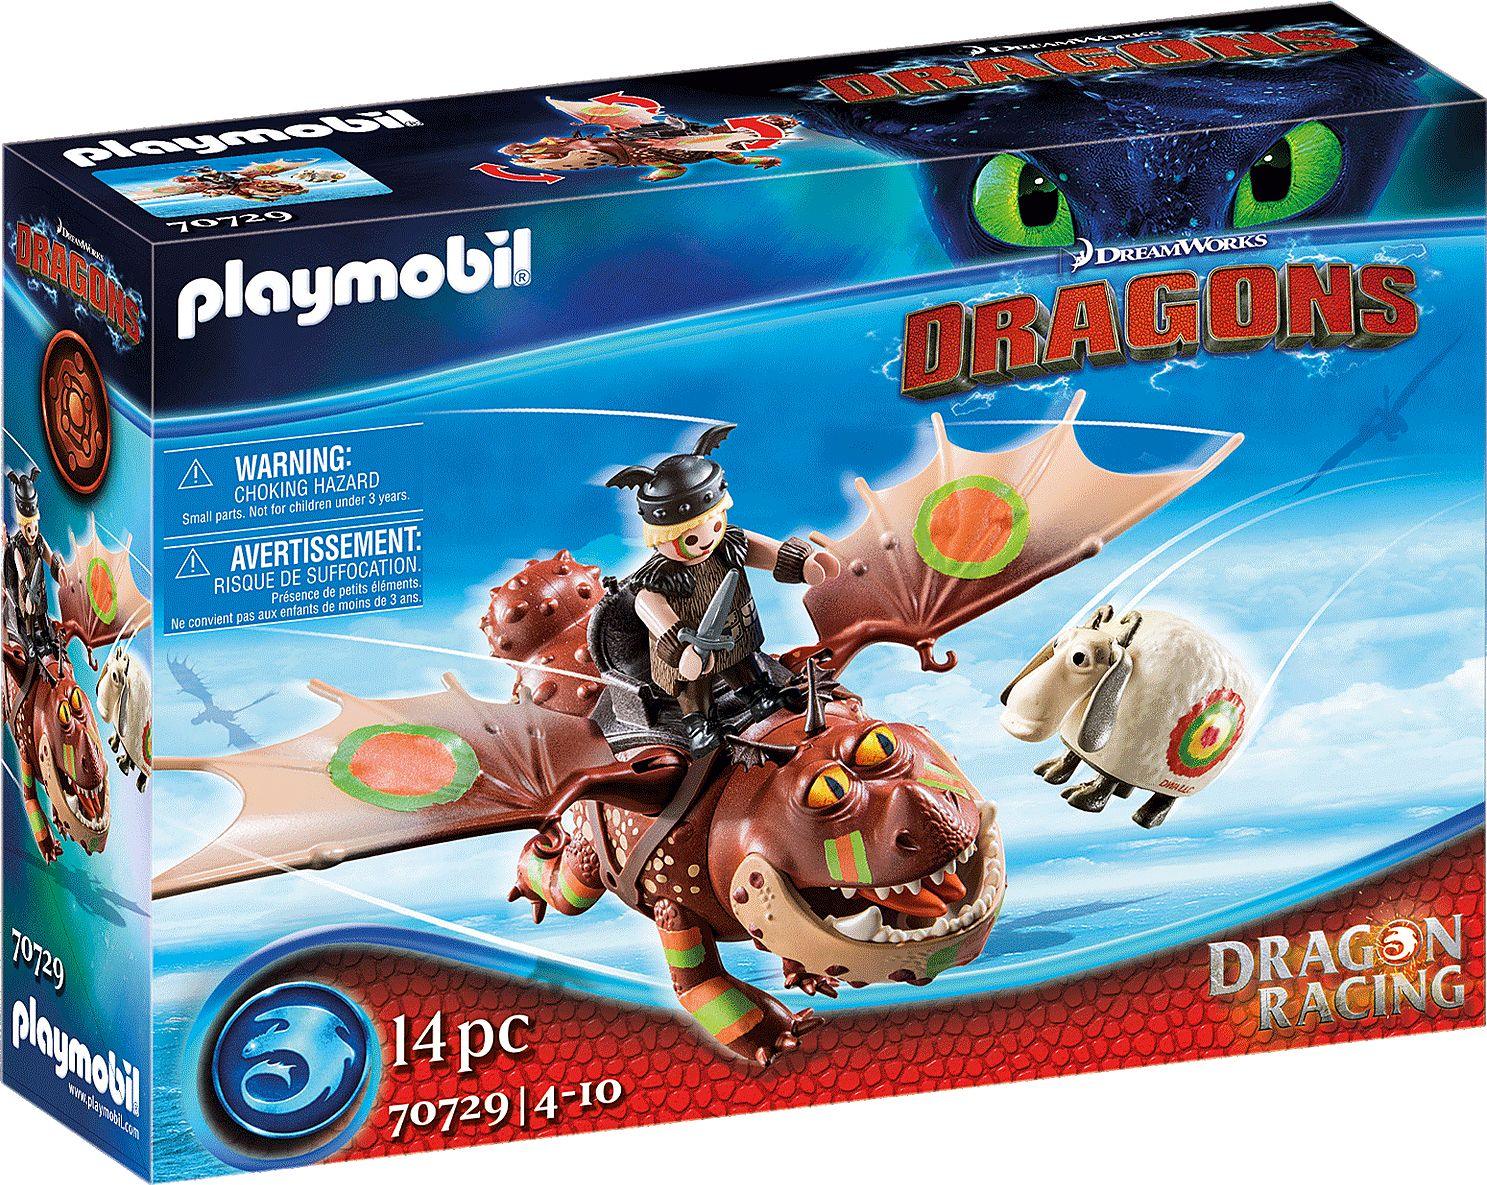 Playmobil: Dragon Racing: Śledzik i Sztukamięs - Noski Noski